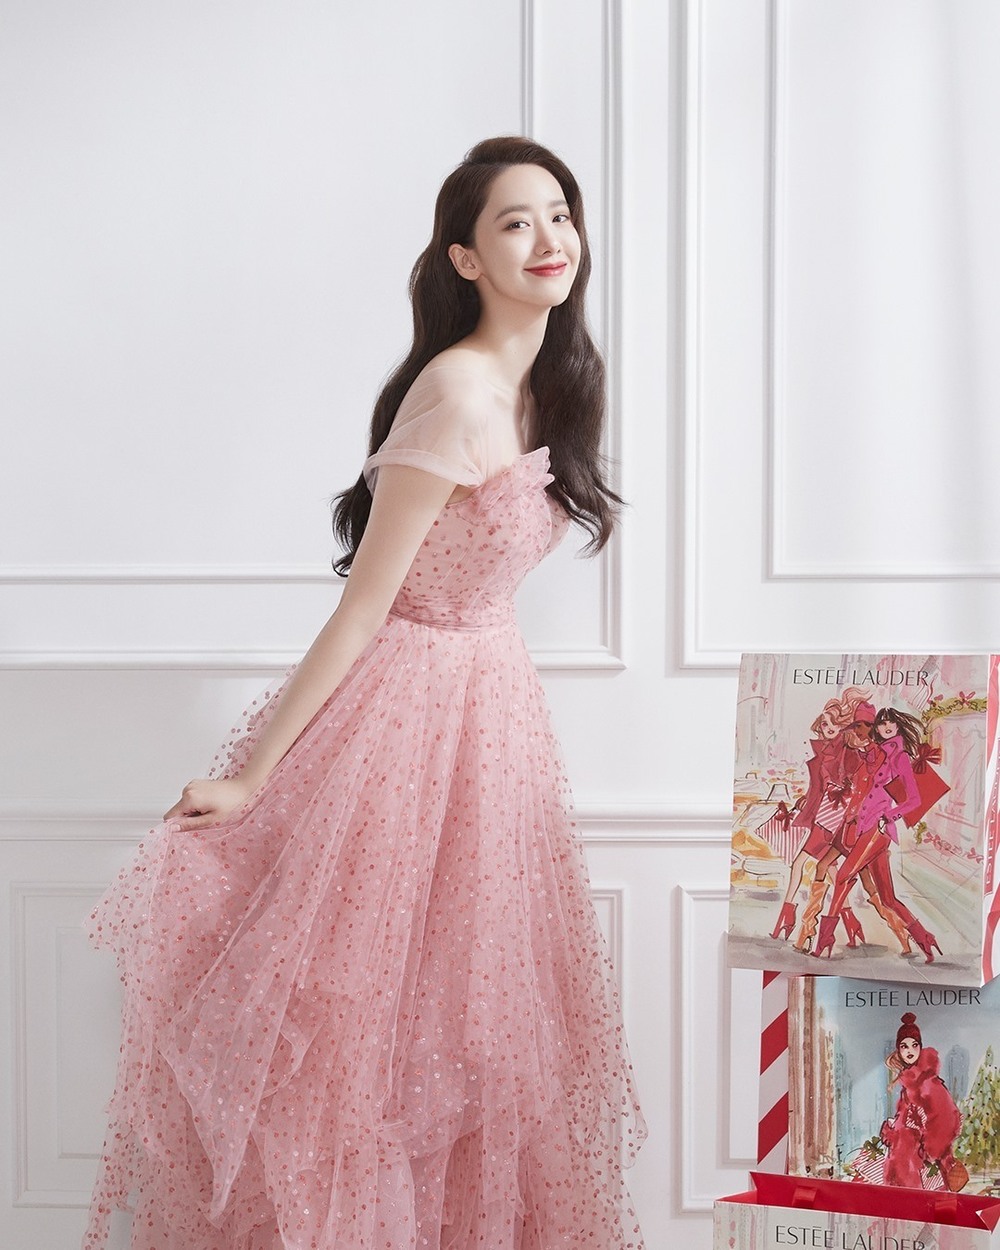 
Nhan sắc thanh thuần của YoonA trong chiếc đầm hồng nhẹ nhàng. (Ảnh: Pinterest)